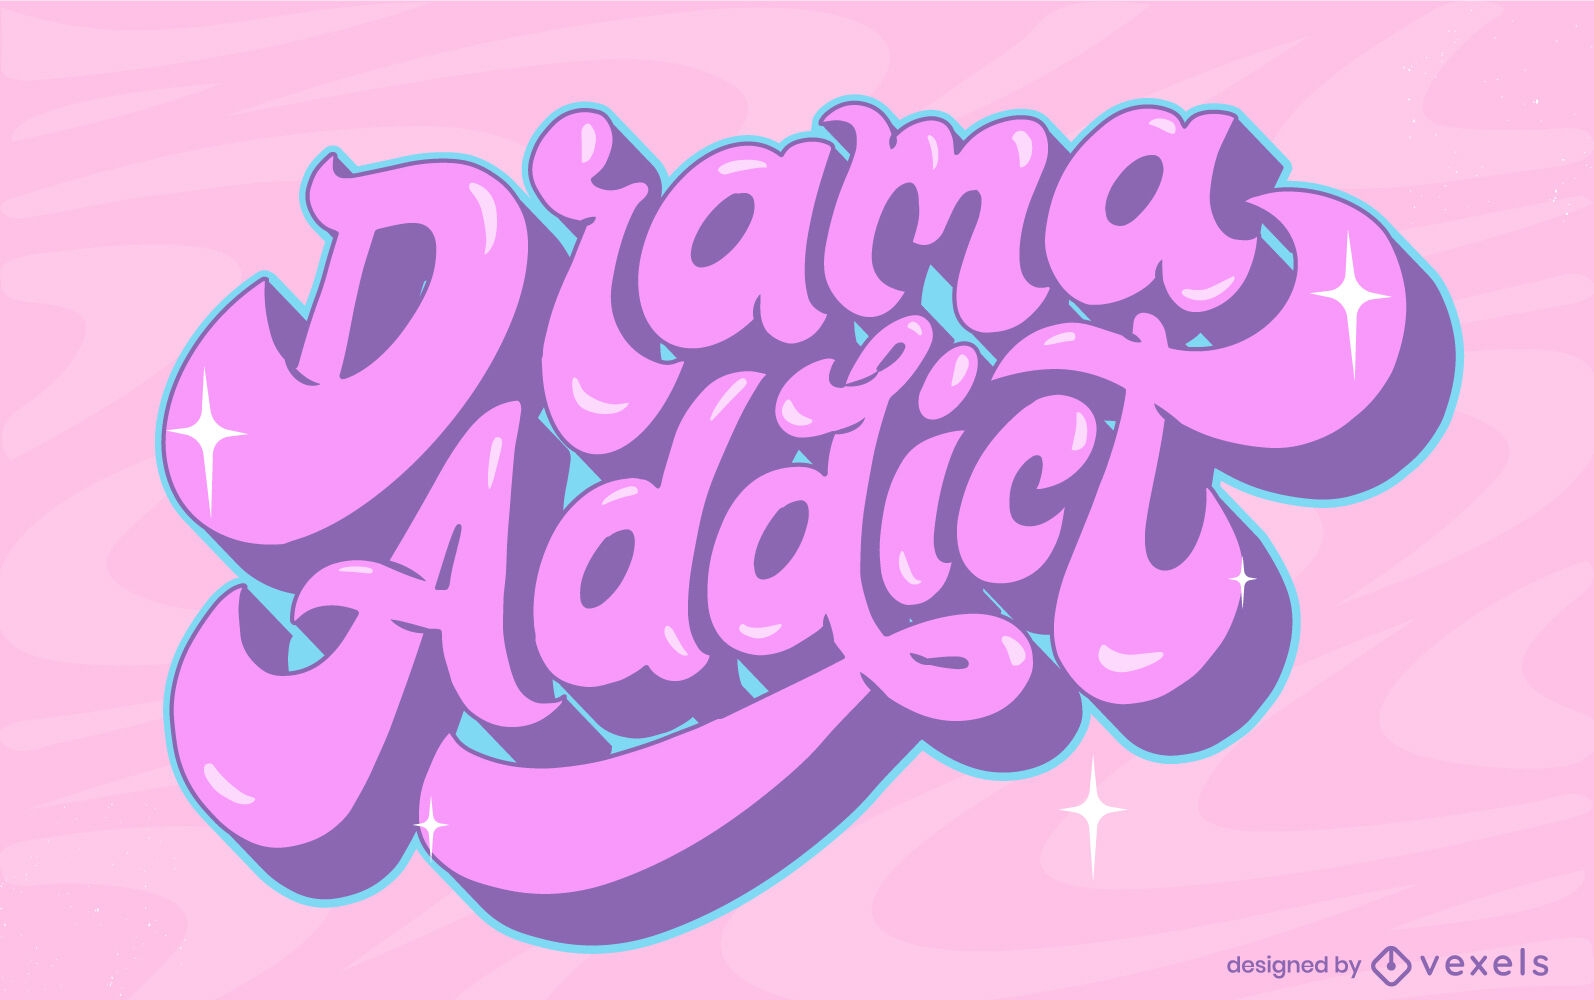 Drama Addict quote lettering